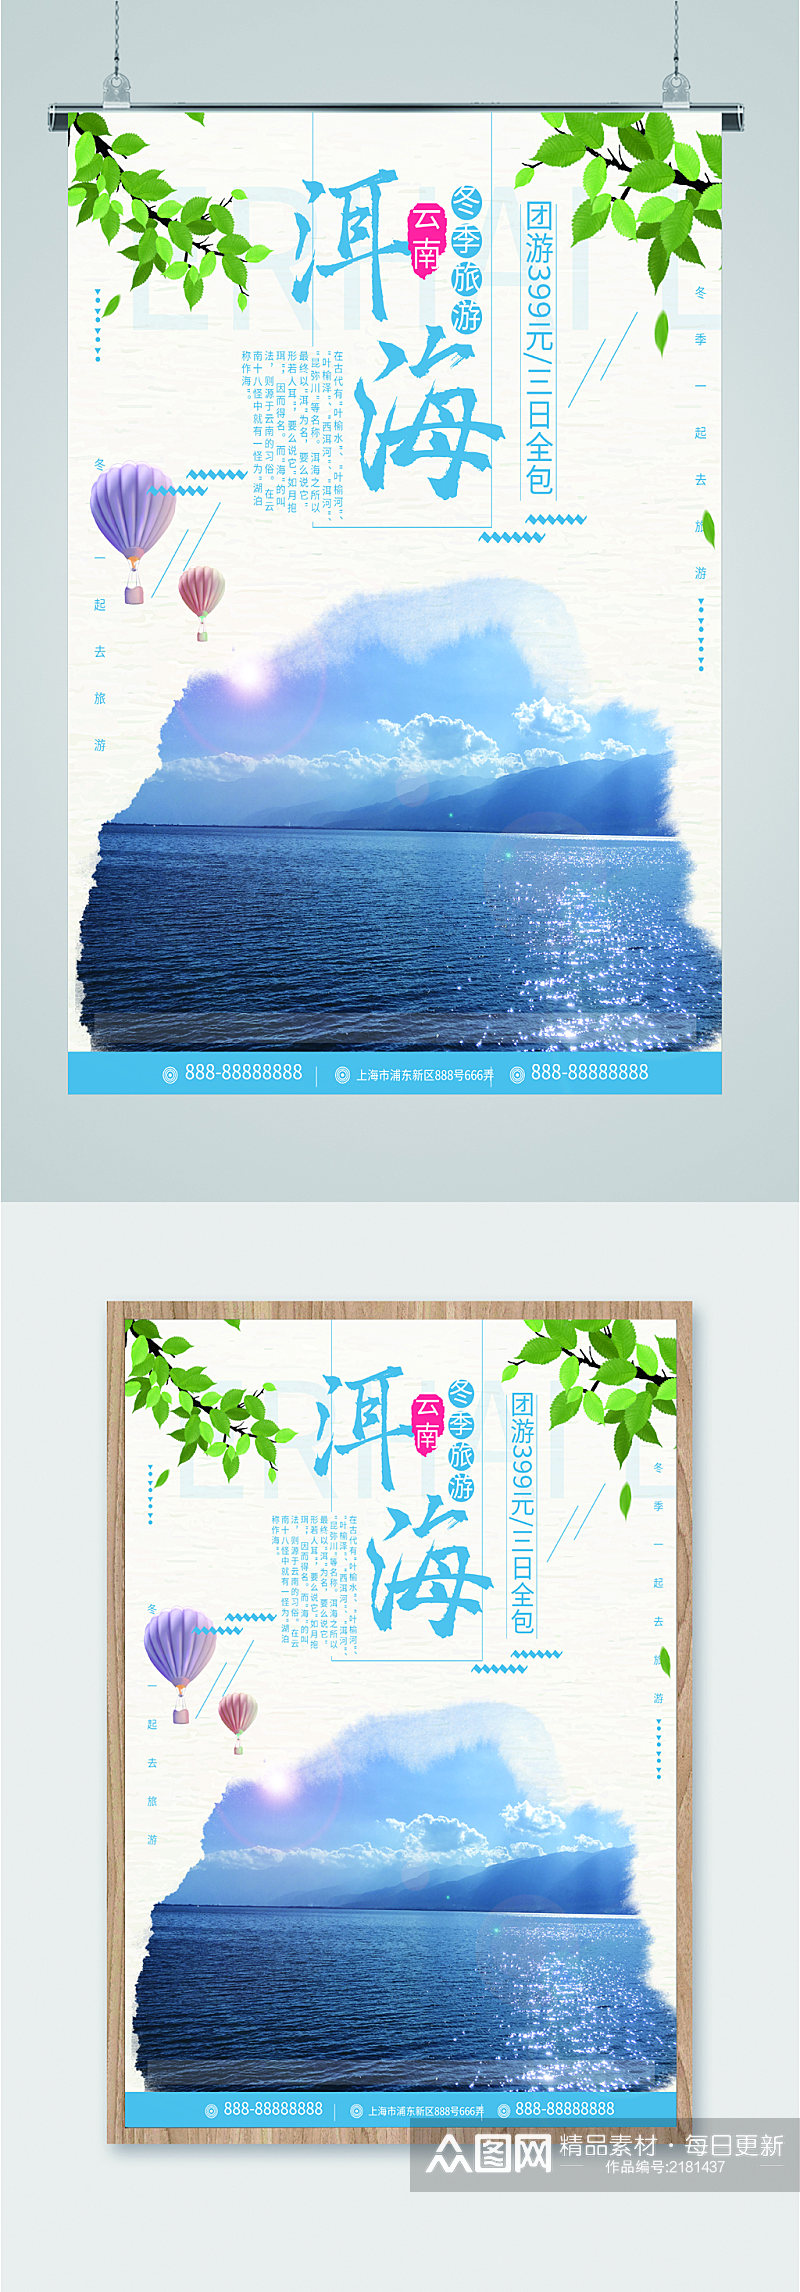 云南洱海冬季旅游海报素材